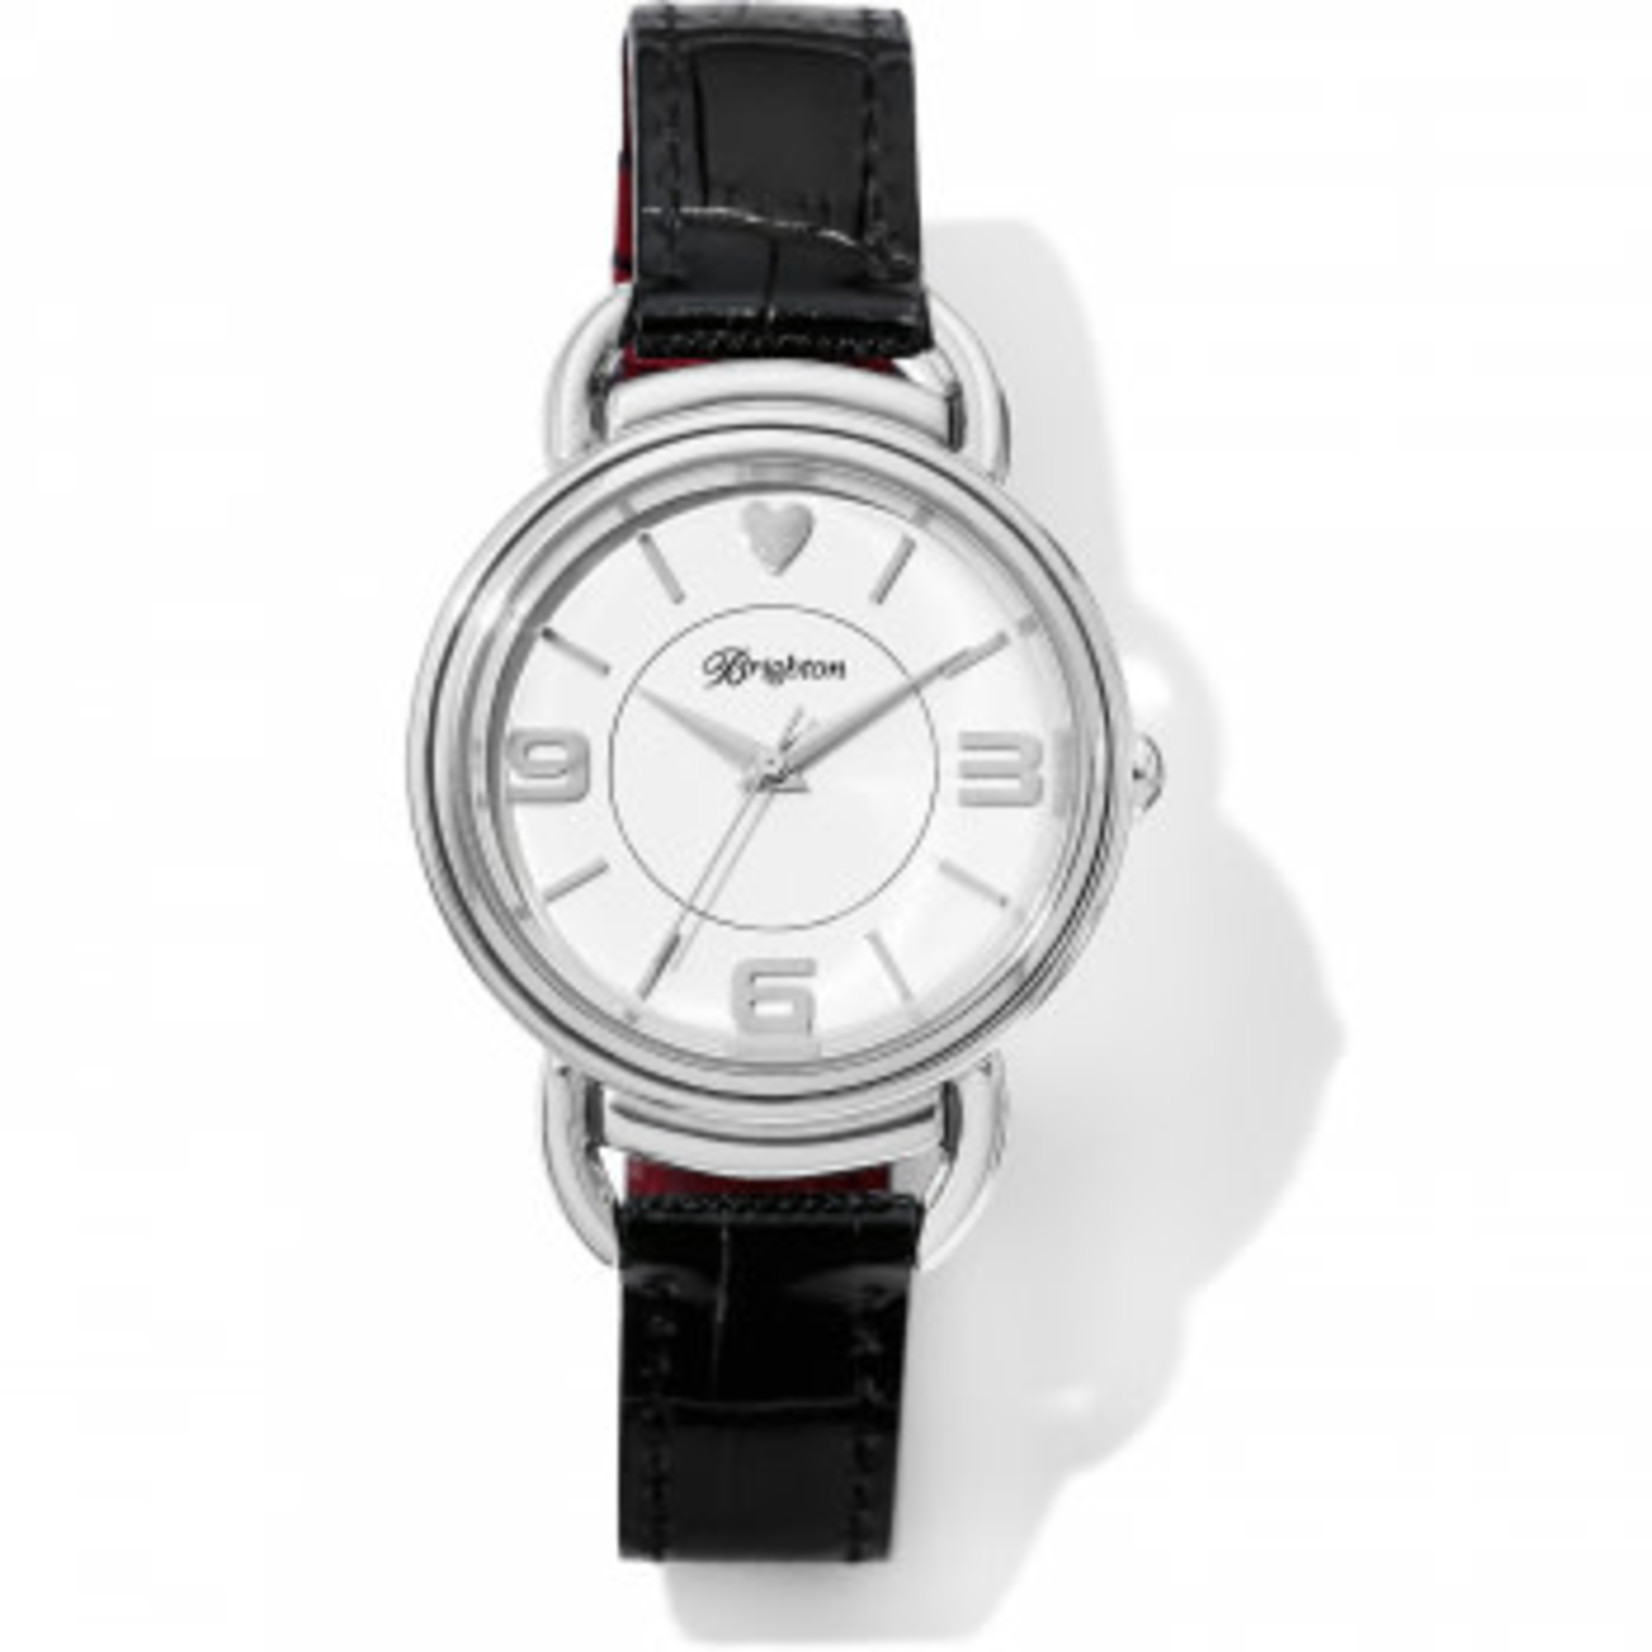 Brighton W10450 Helsinki Reversible Watch